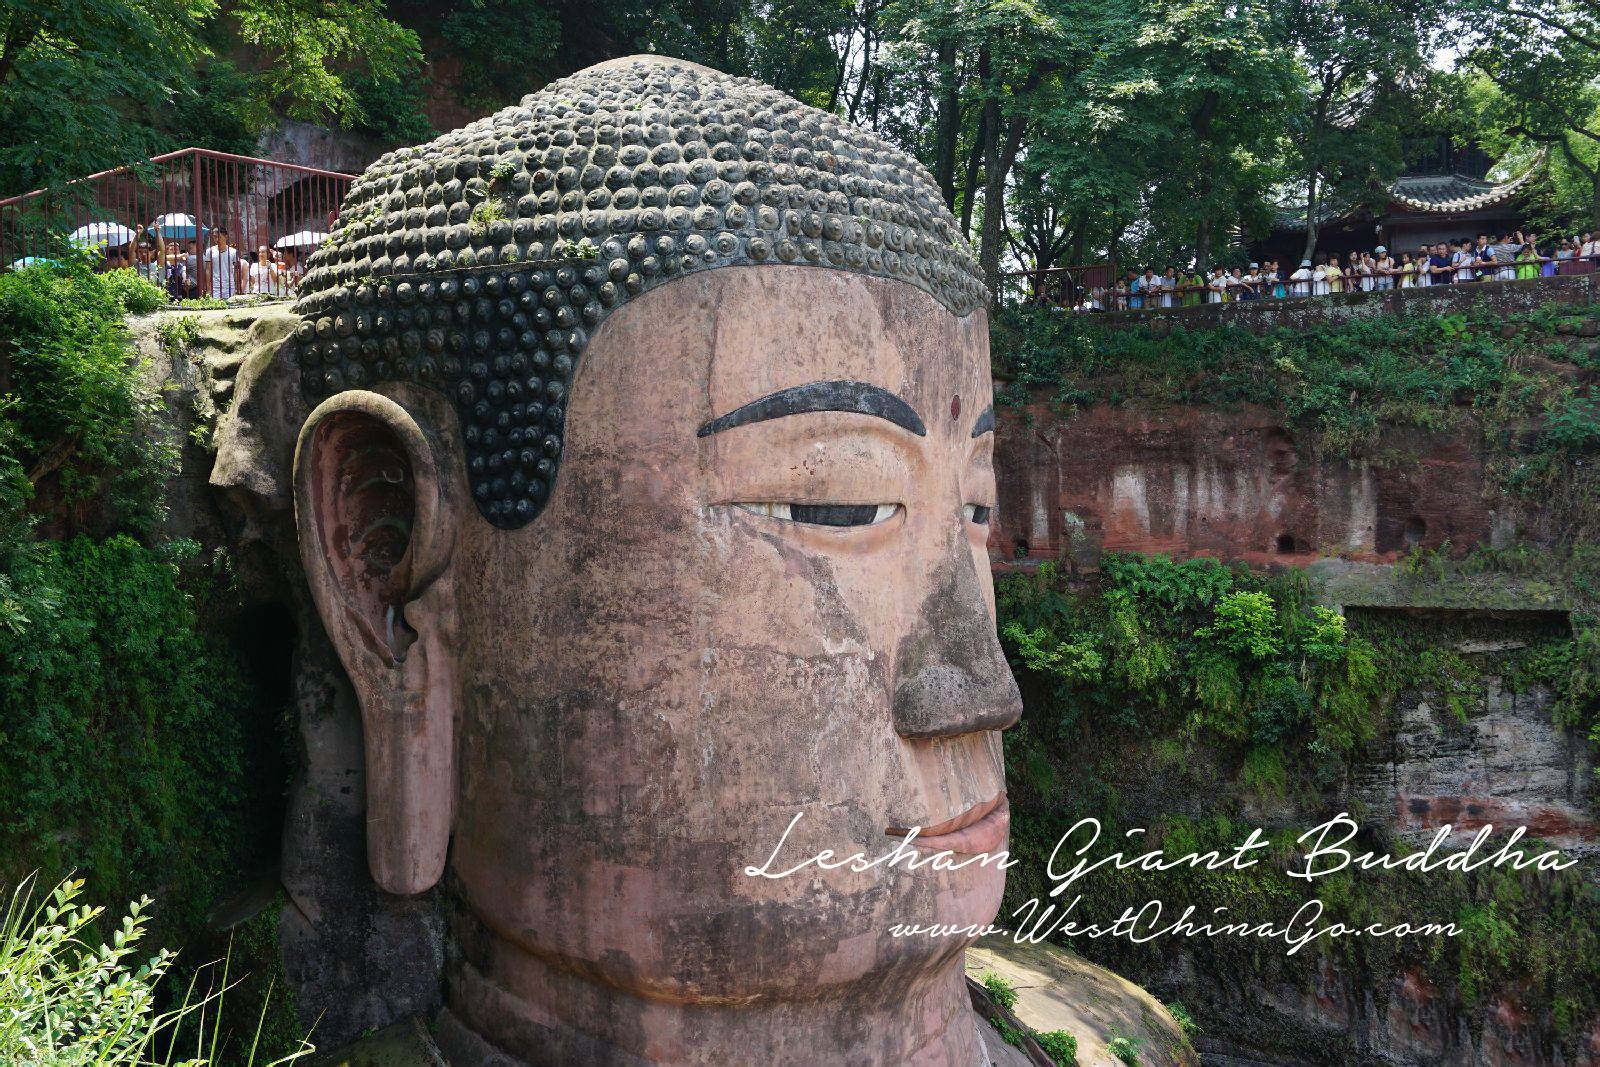  Leshan Giant Buddha